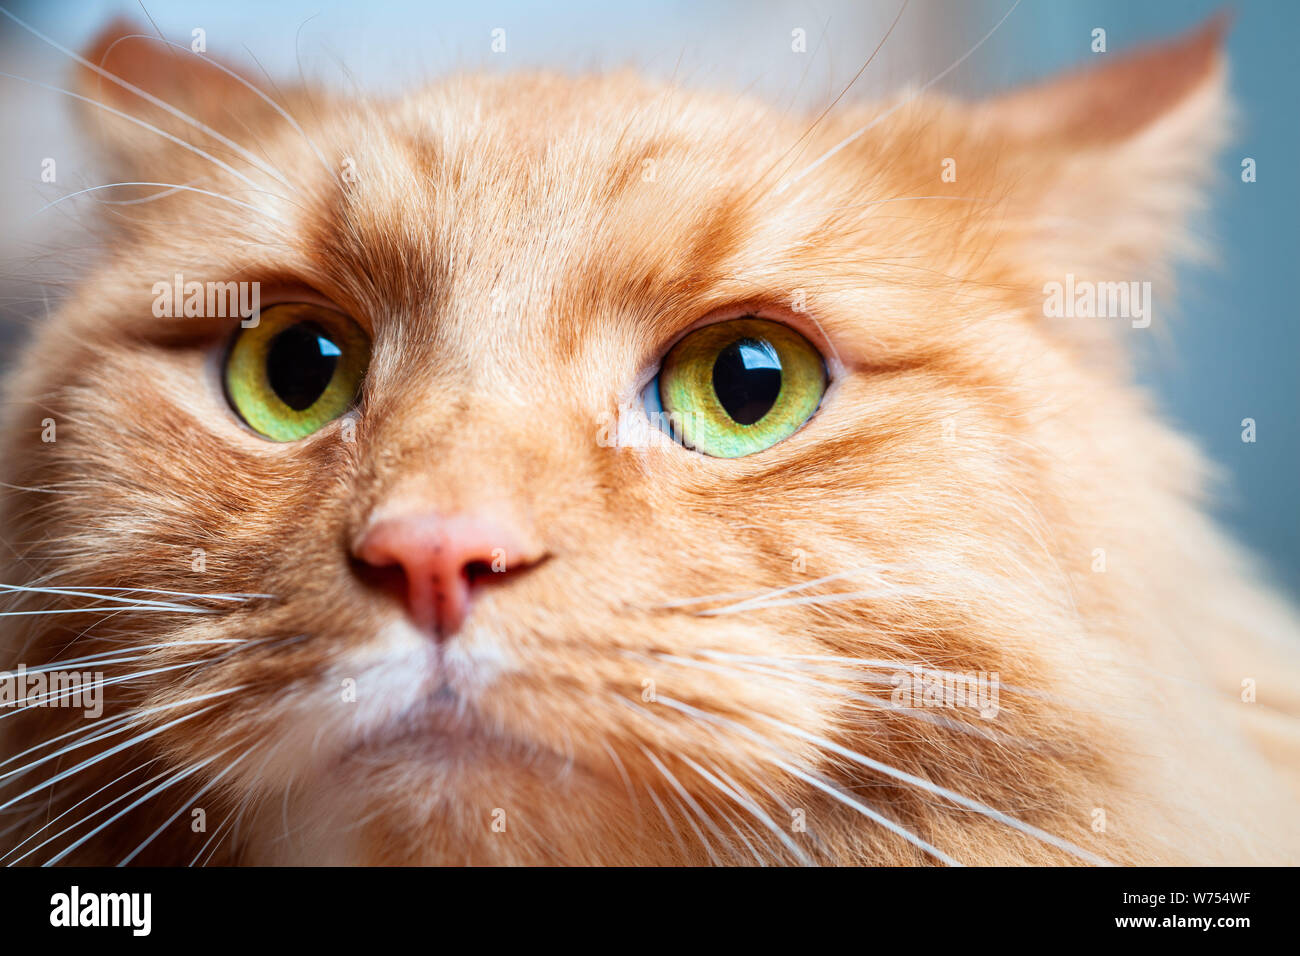 Lo zenzero cat con bellissimi occhi verdi - extreme closeup ritratto Foto Stock